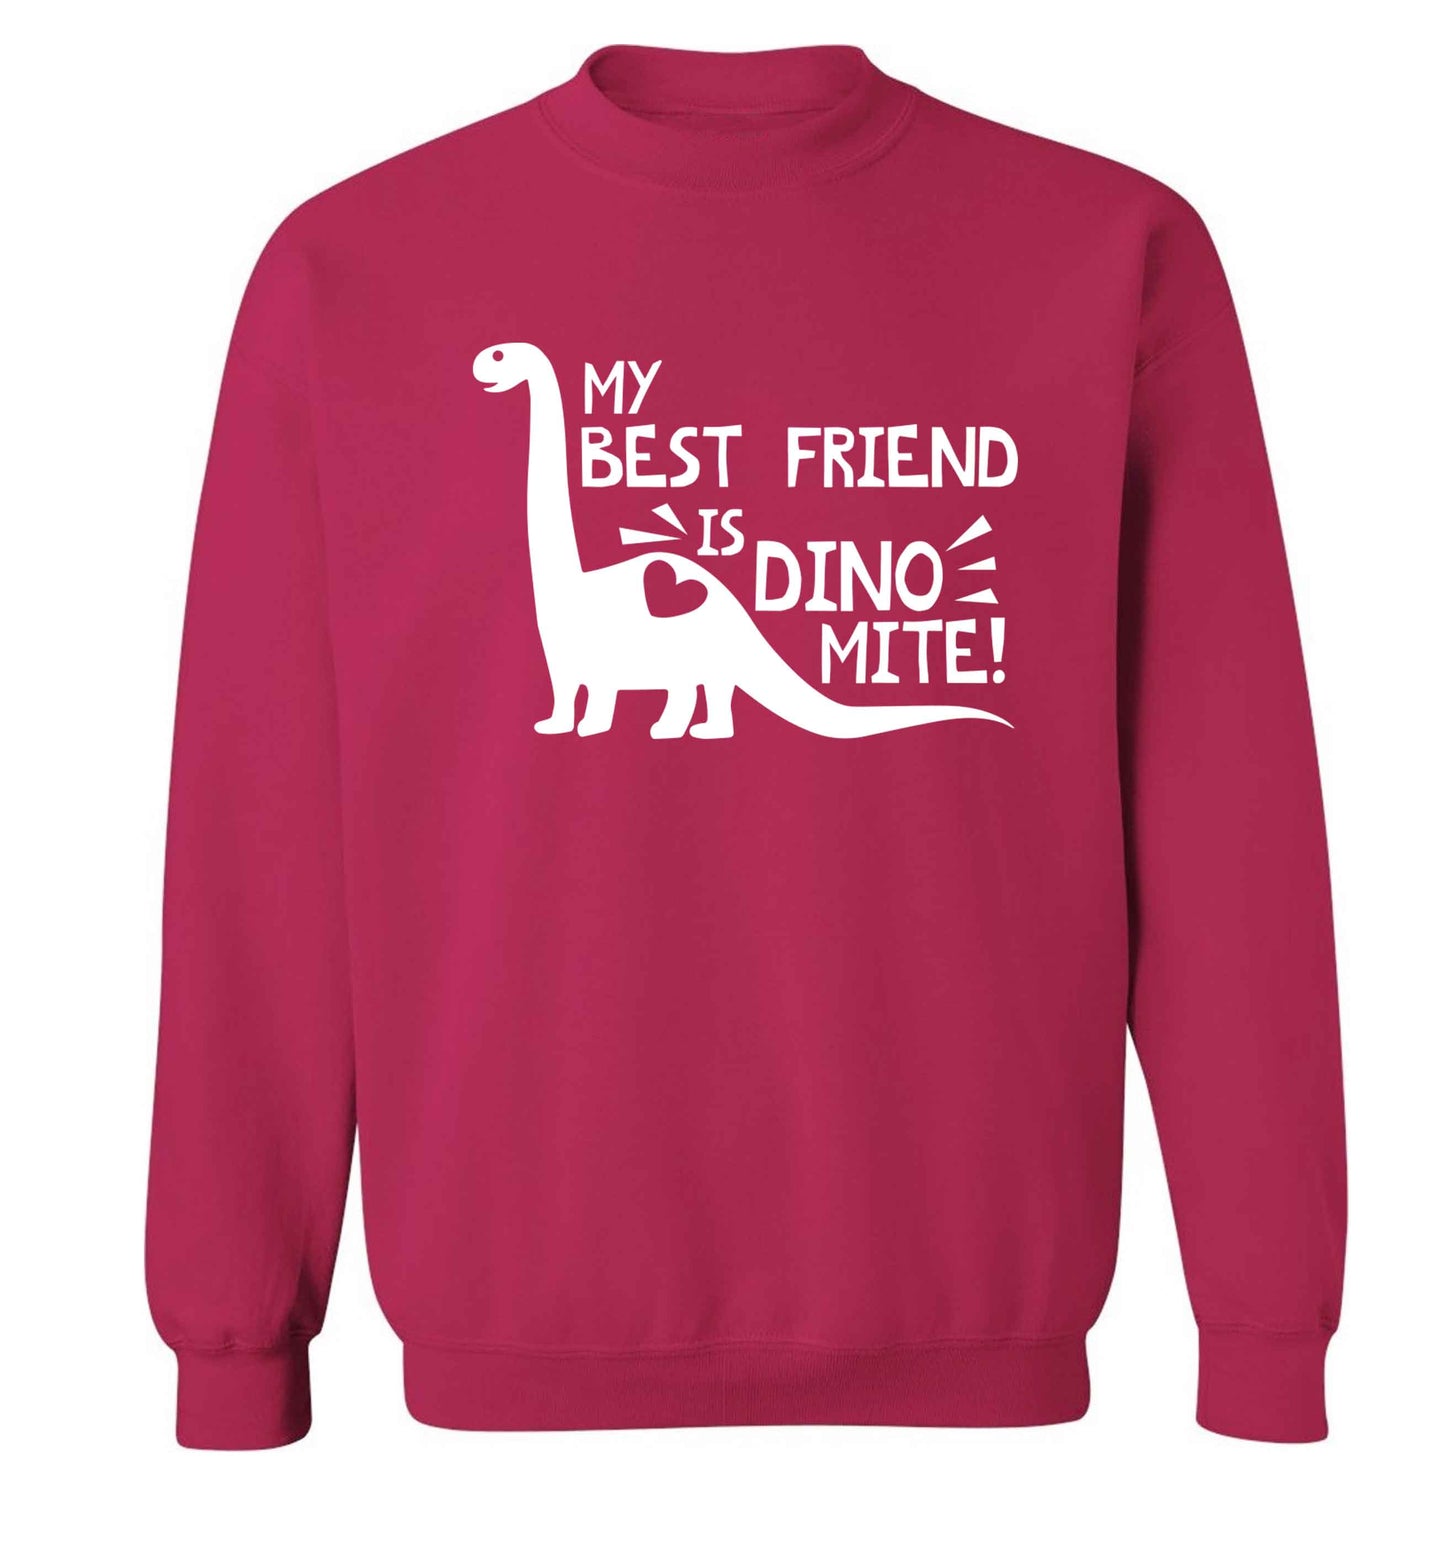 My best friend is dinomite! Adult's unisex pink Sweater 2XL